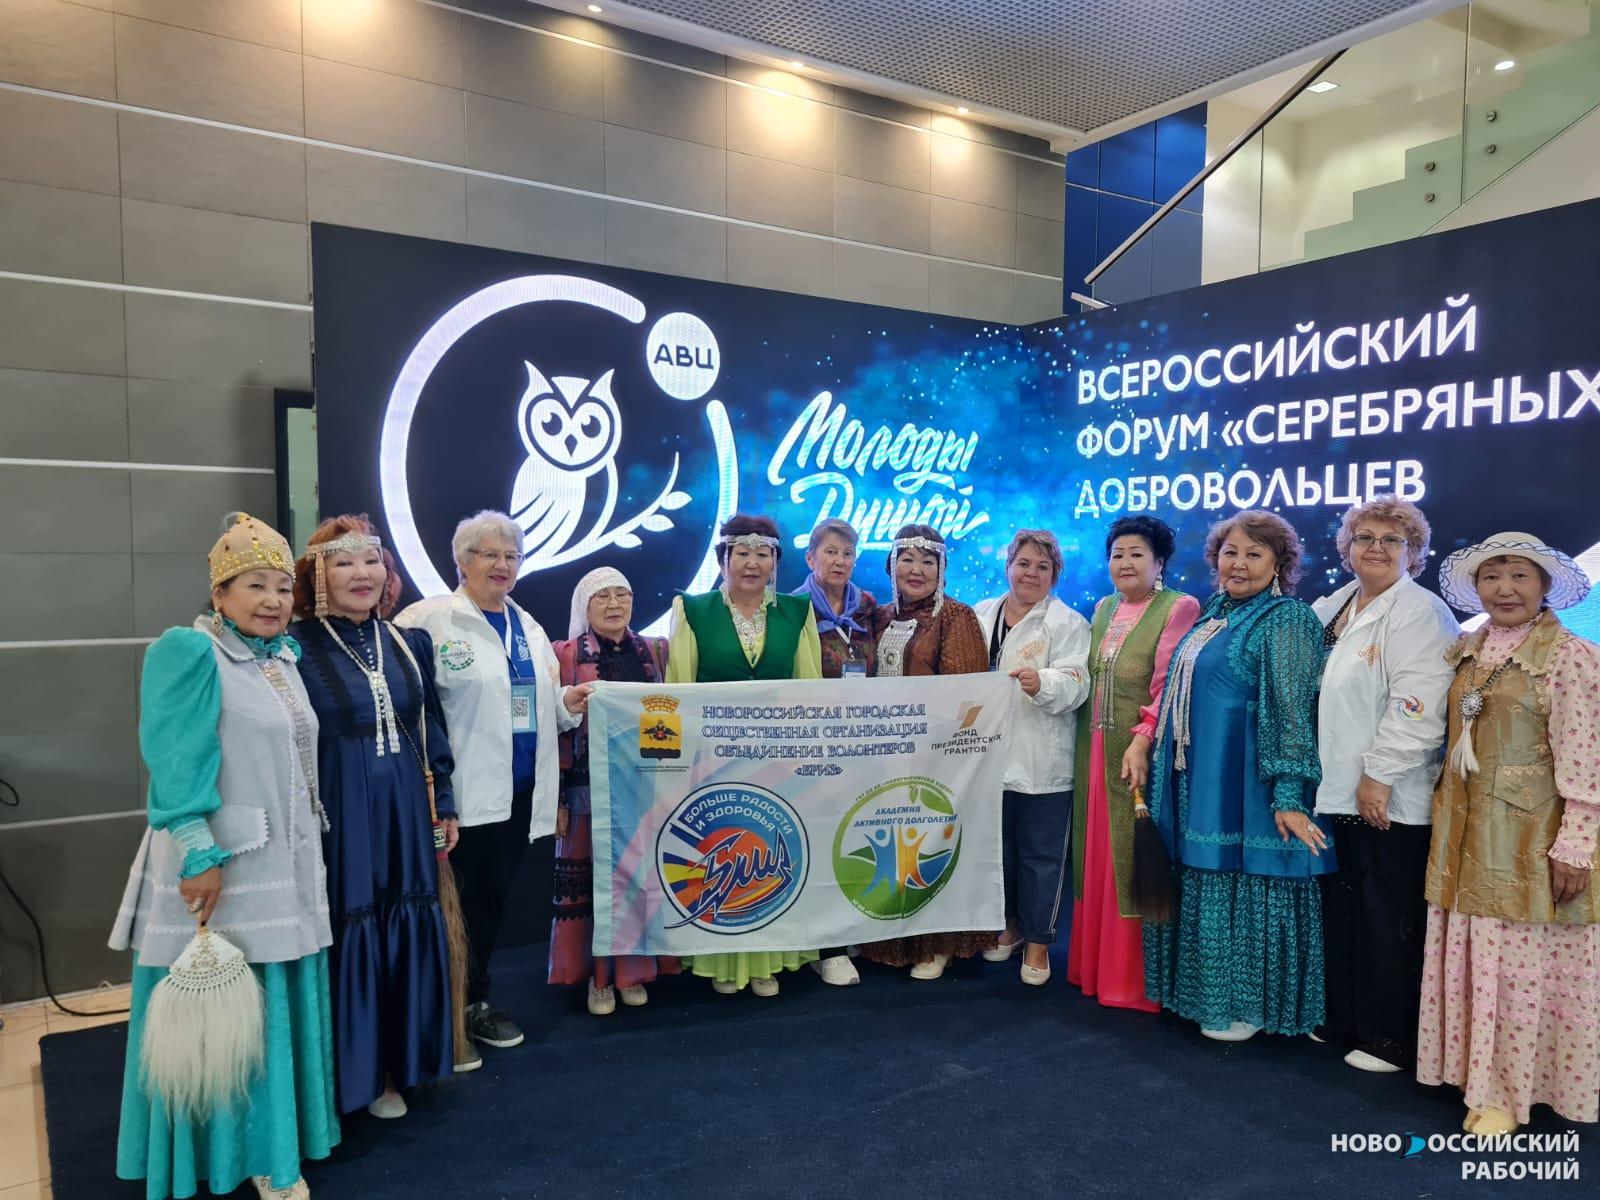 Новороссийцы приняли участие во Всероссийском форуме серебряных добровольцев